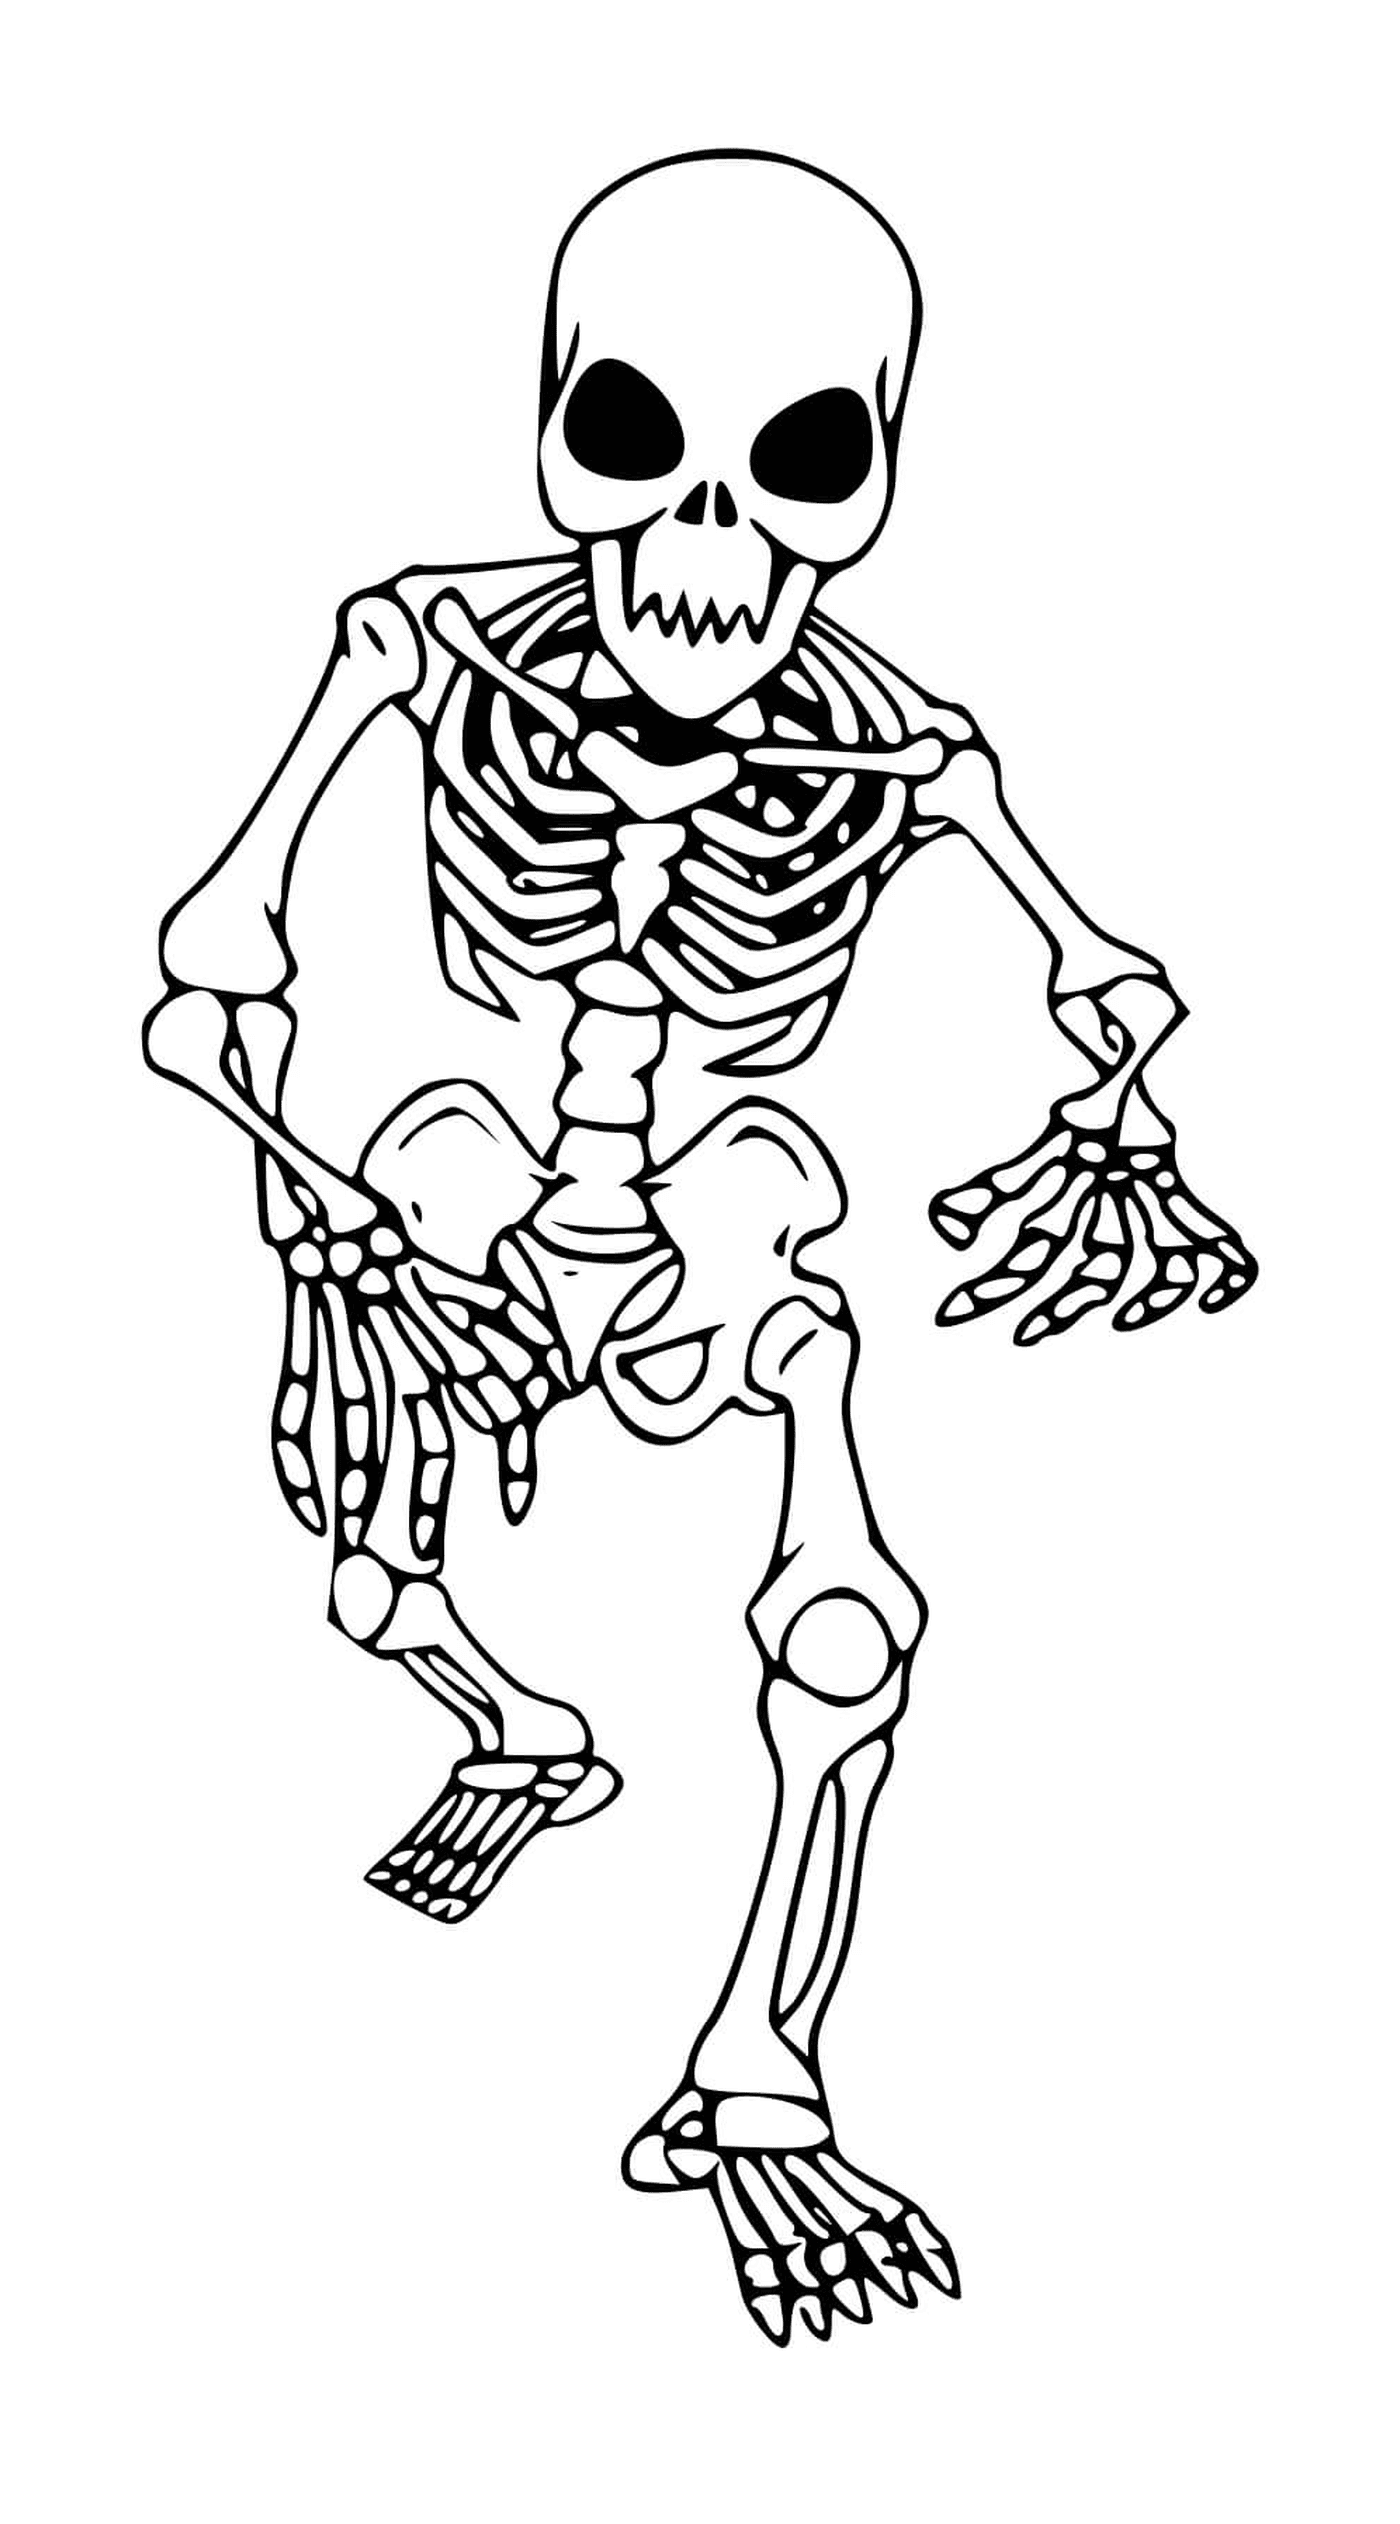  Skeleton walking for children, headless 